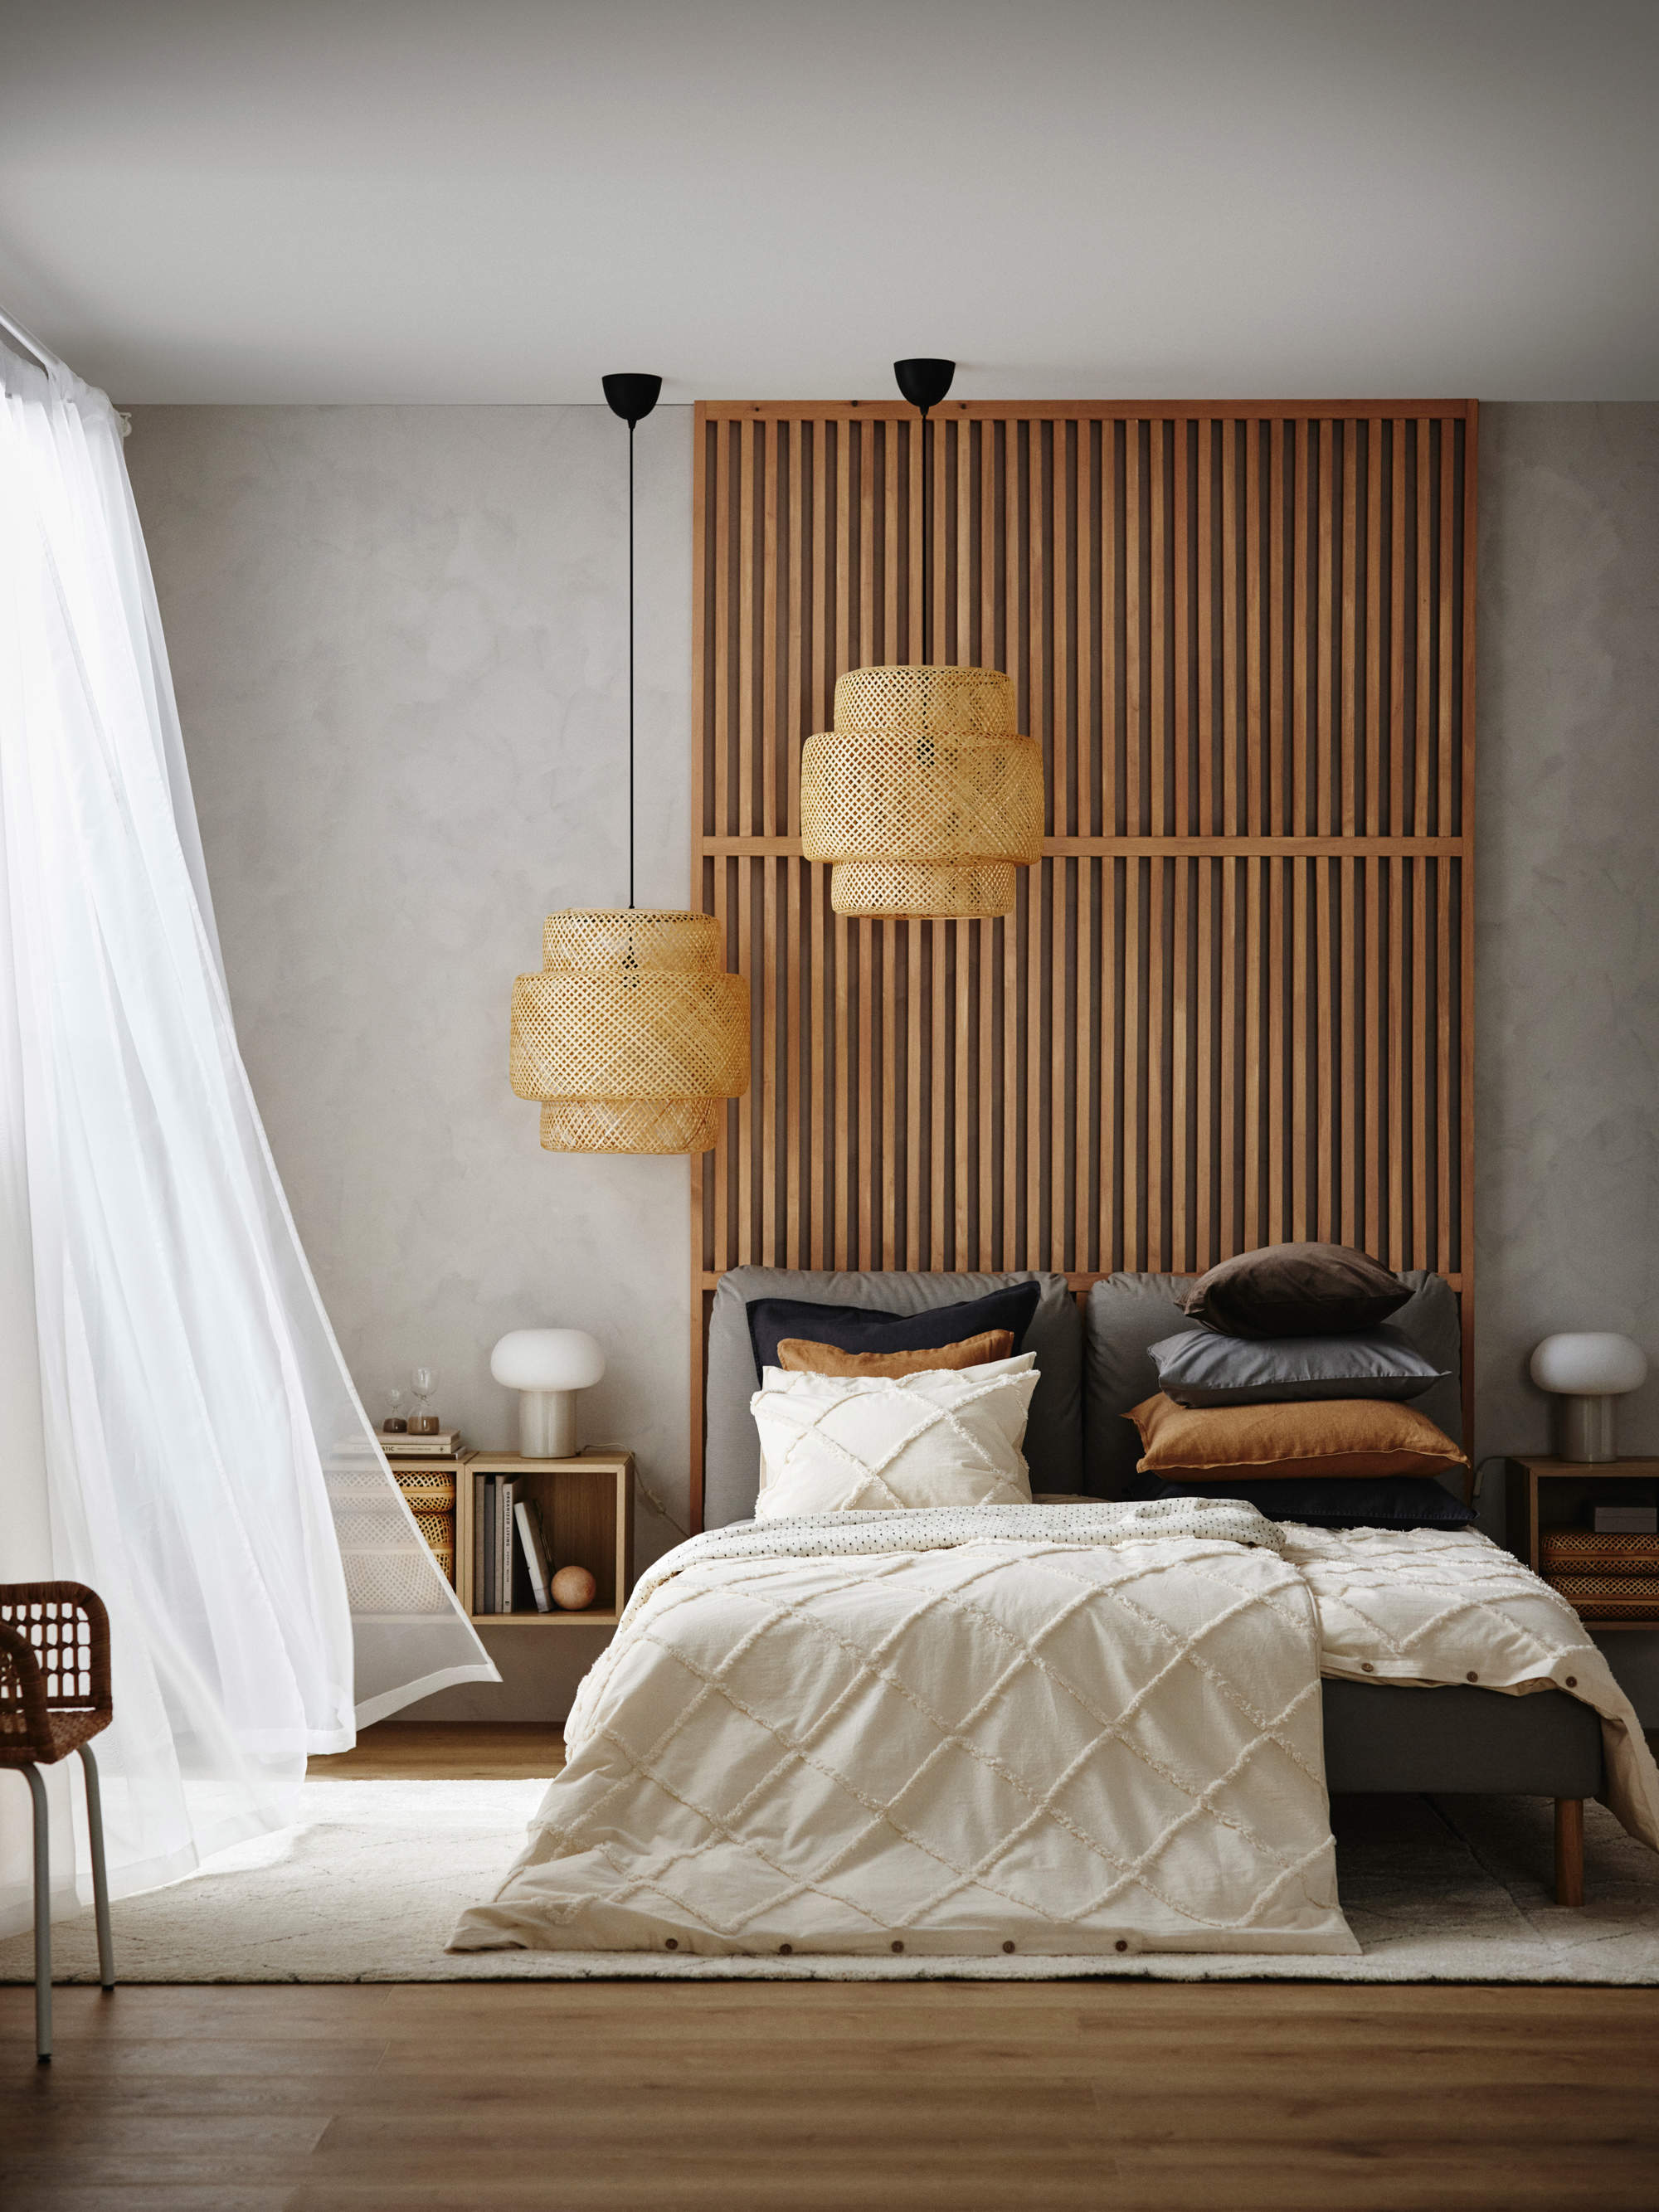 Dormitorio de IKEA con listones de madera en la pared de la cama.